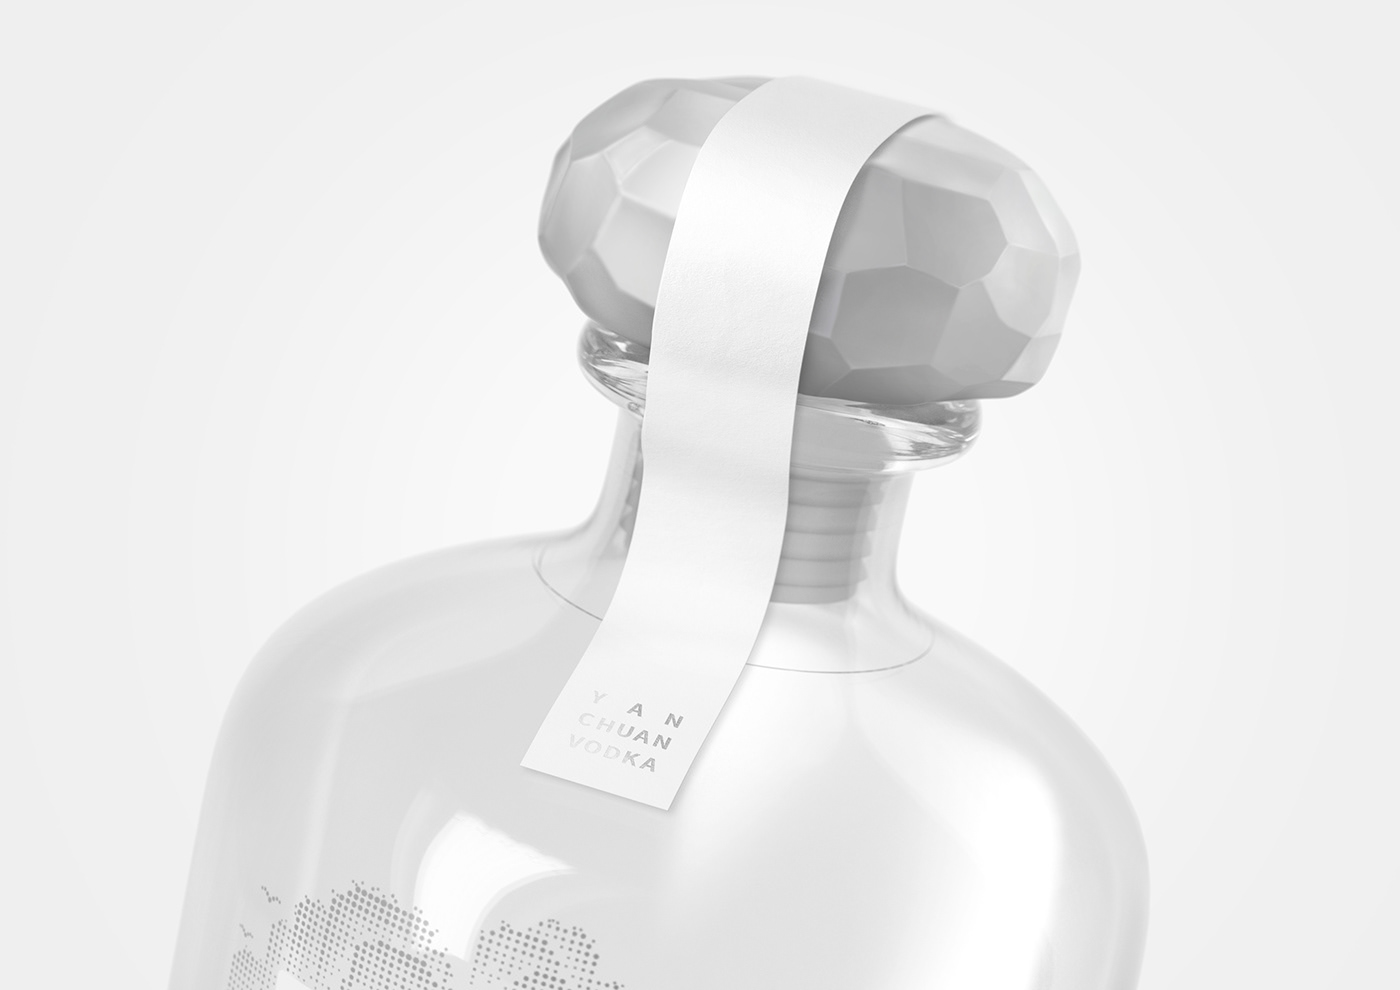 Lingyun creative Packing Design Vodka 凌云创意 font design bottle design